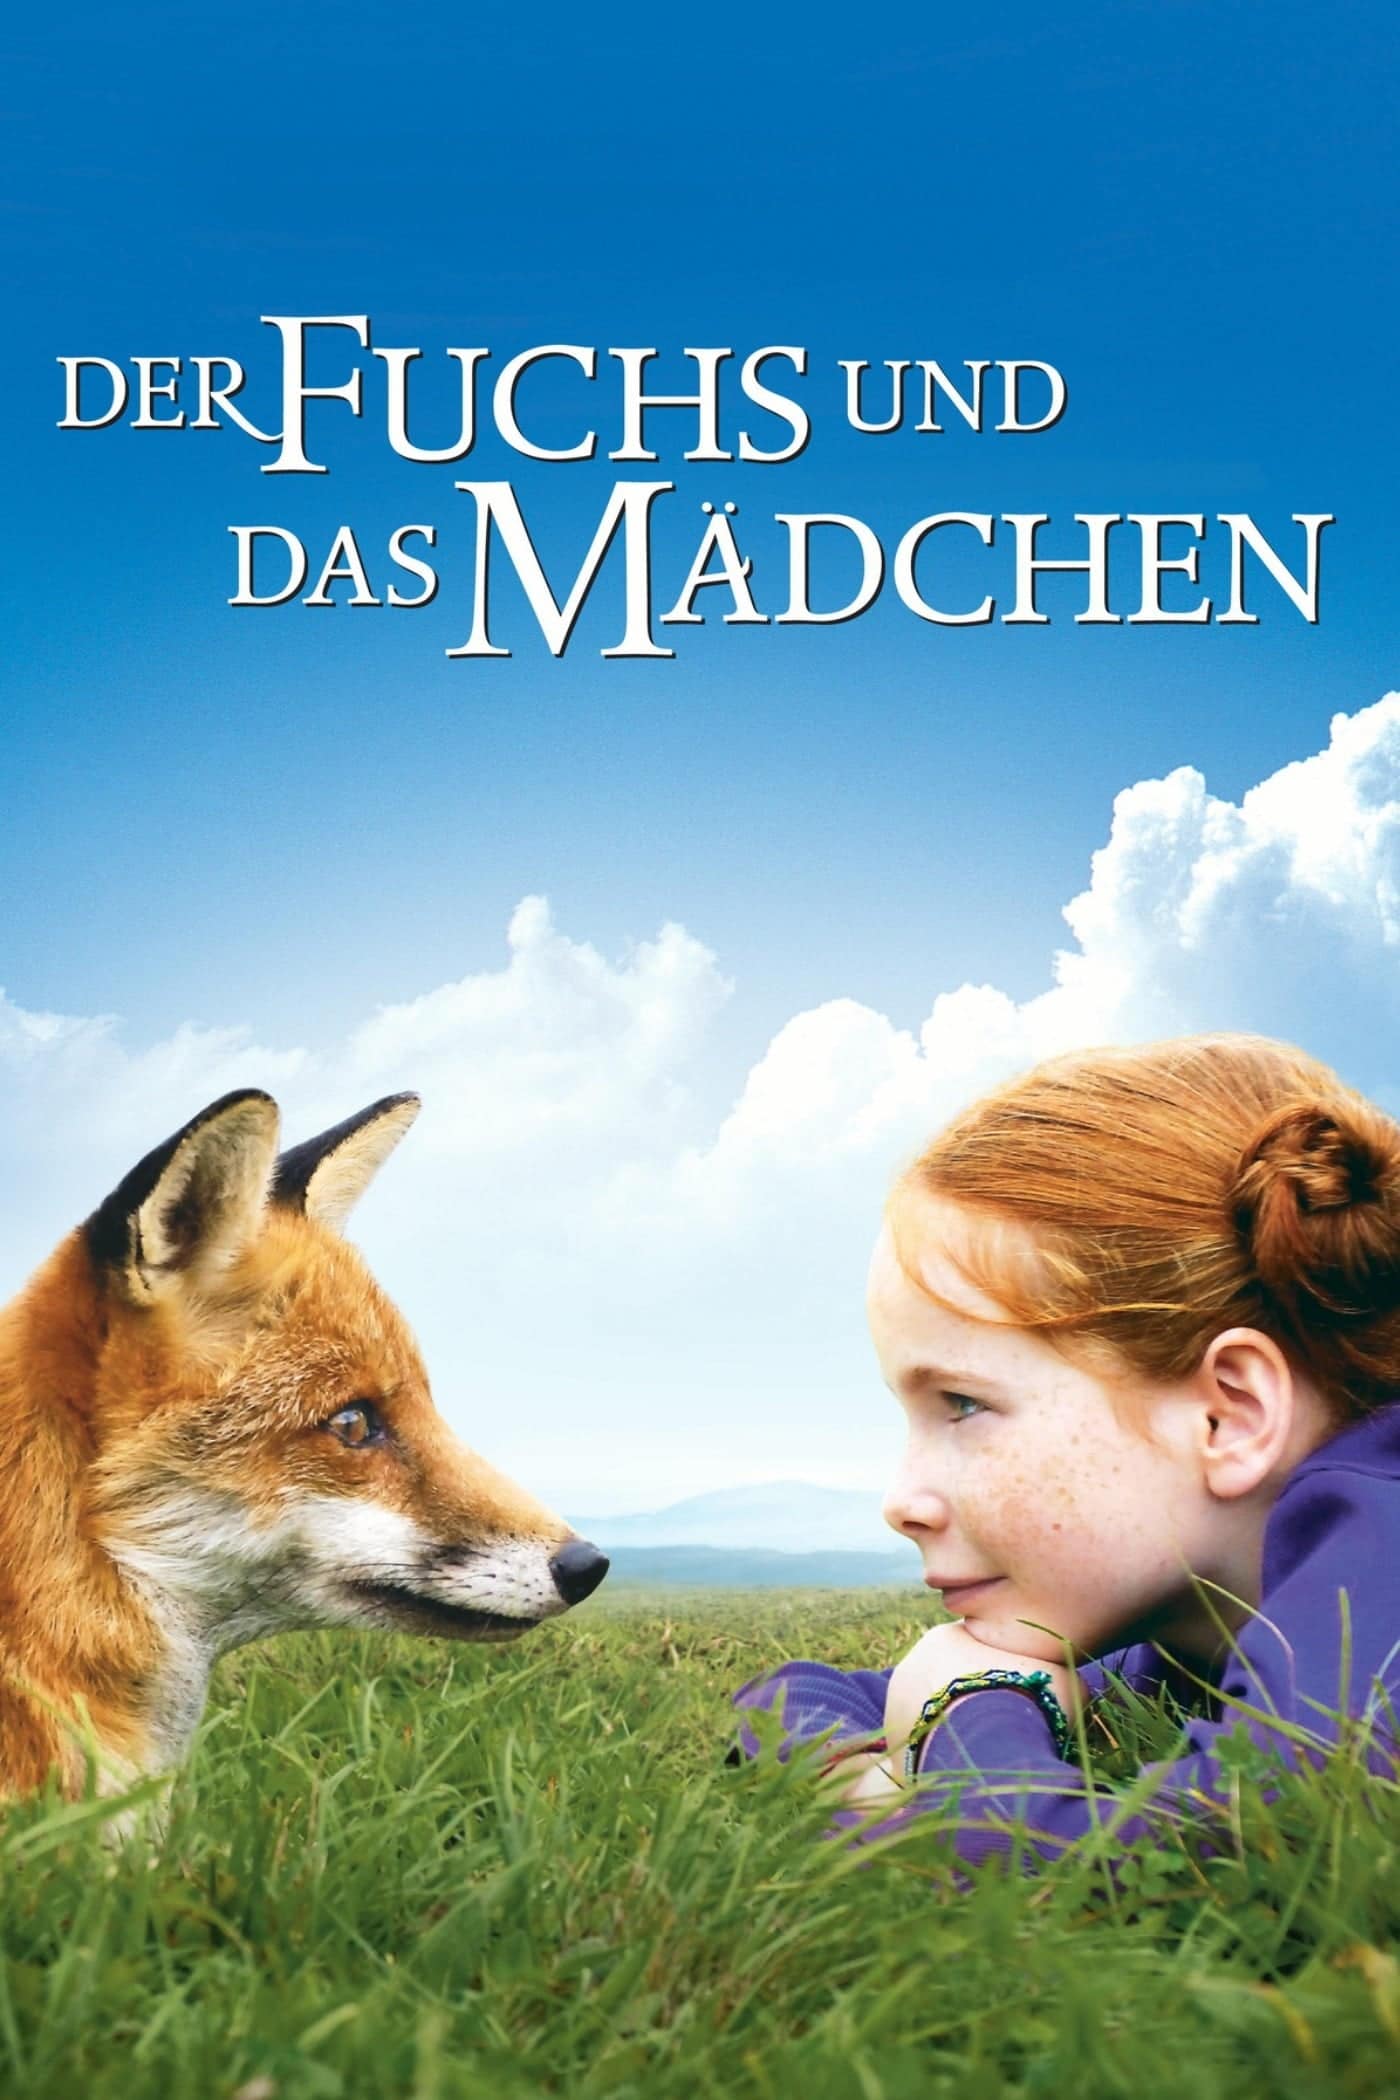 Plakat von "Der Fuchs und das Mädchen"